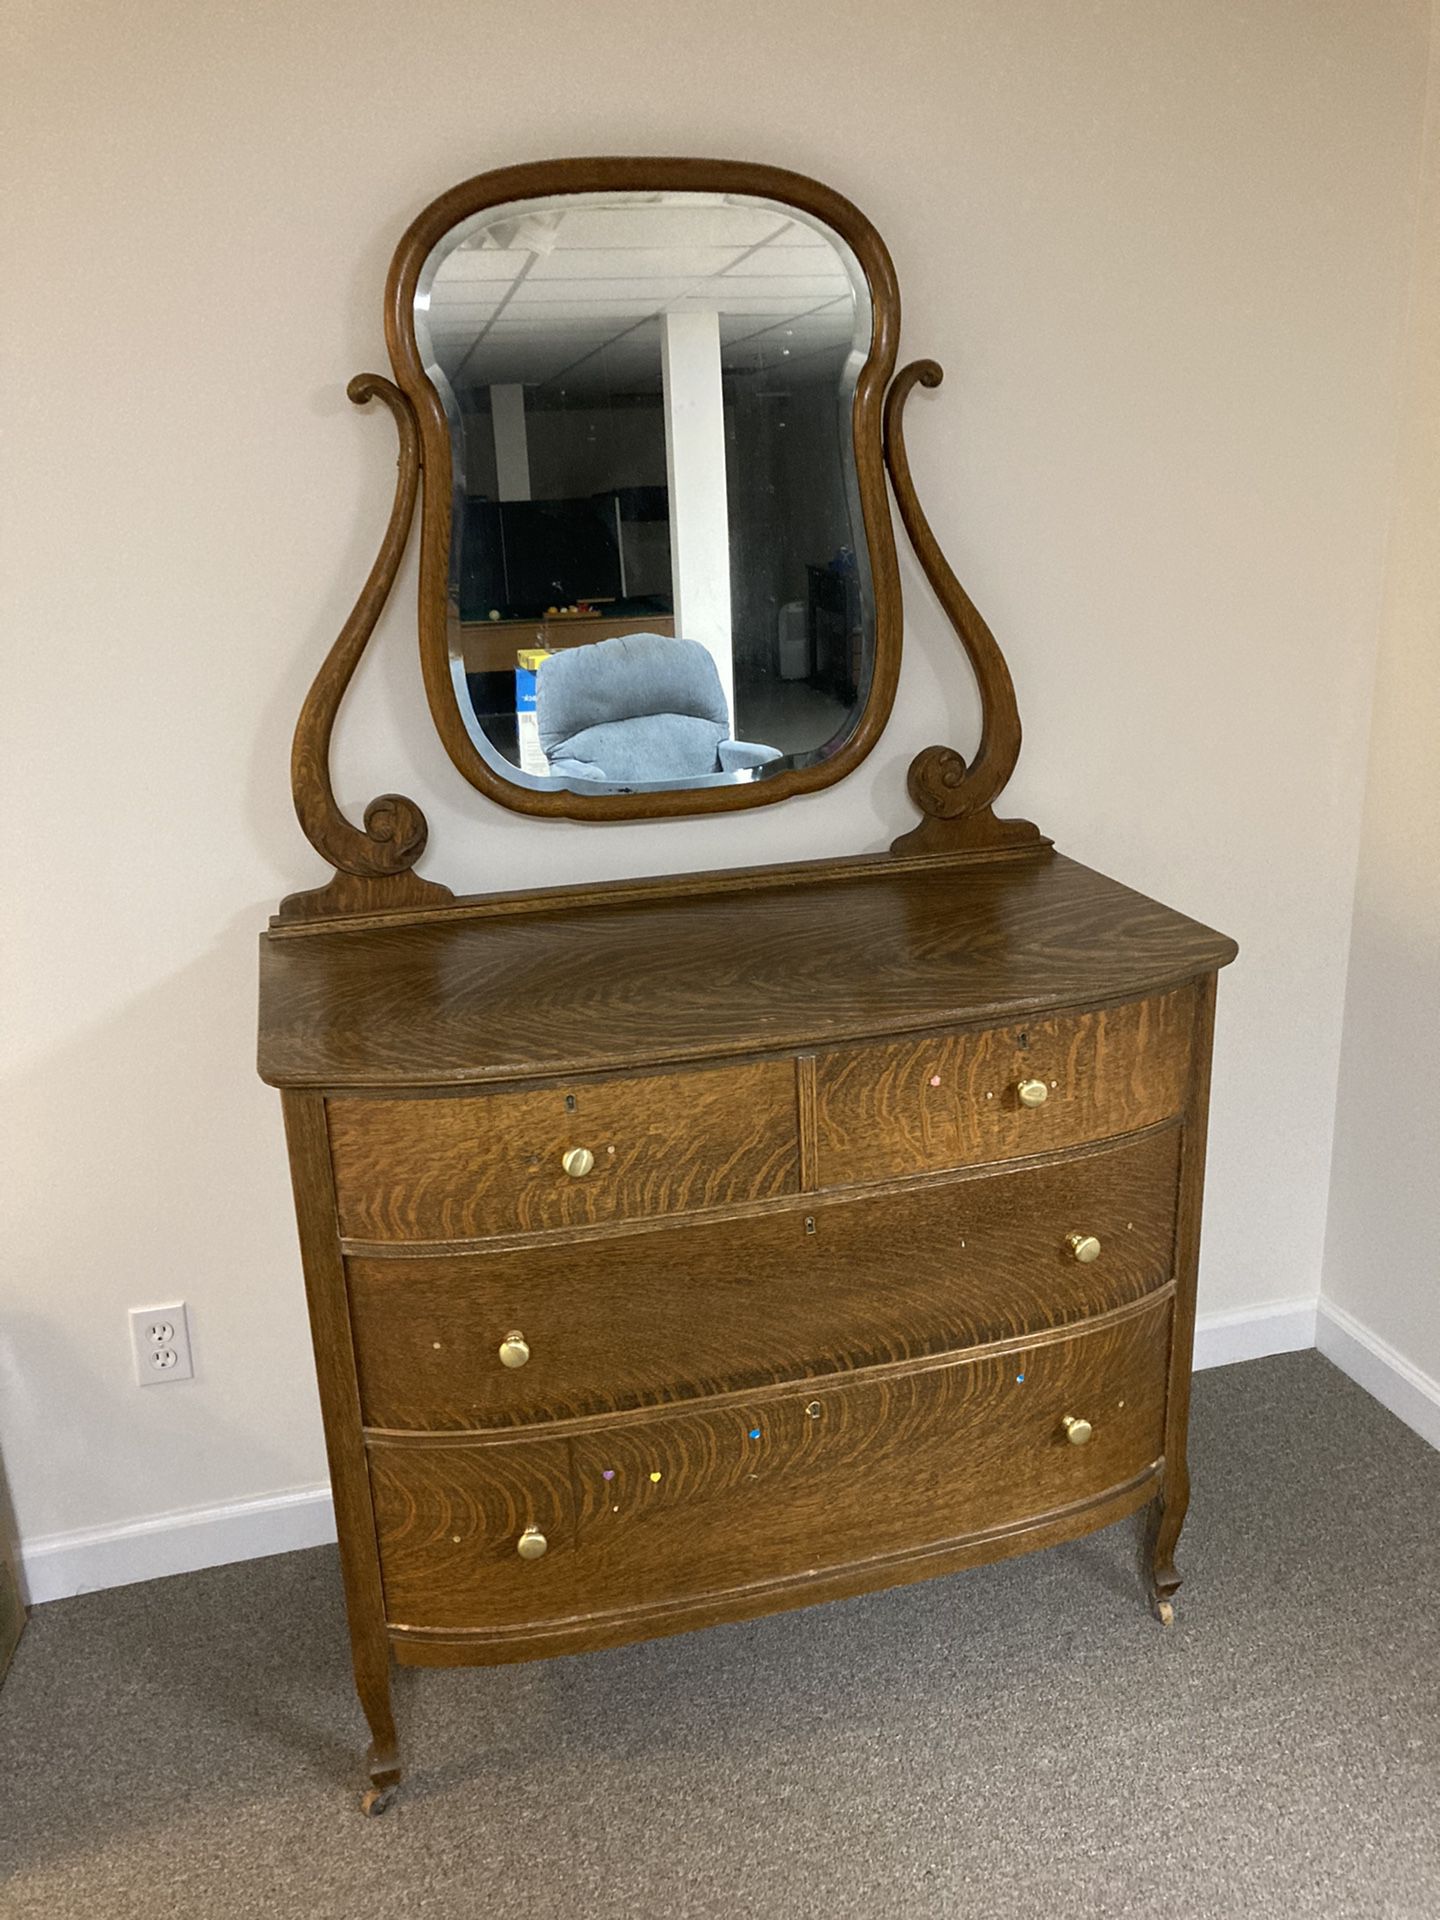 Antique dresser with mirror.